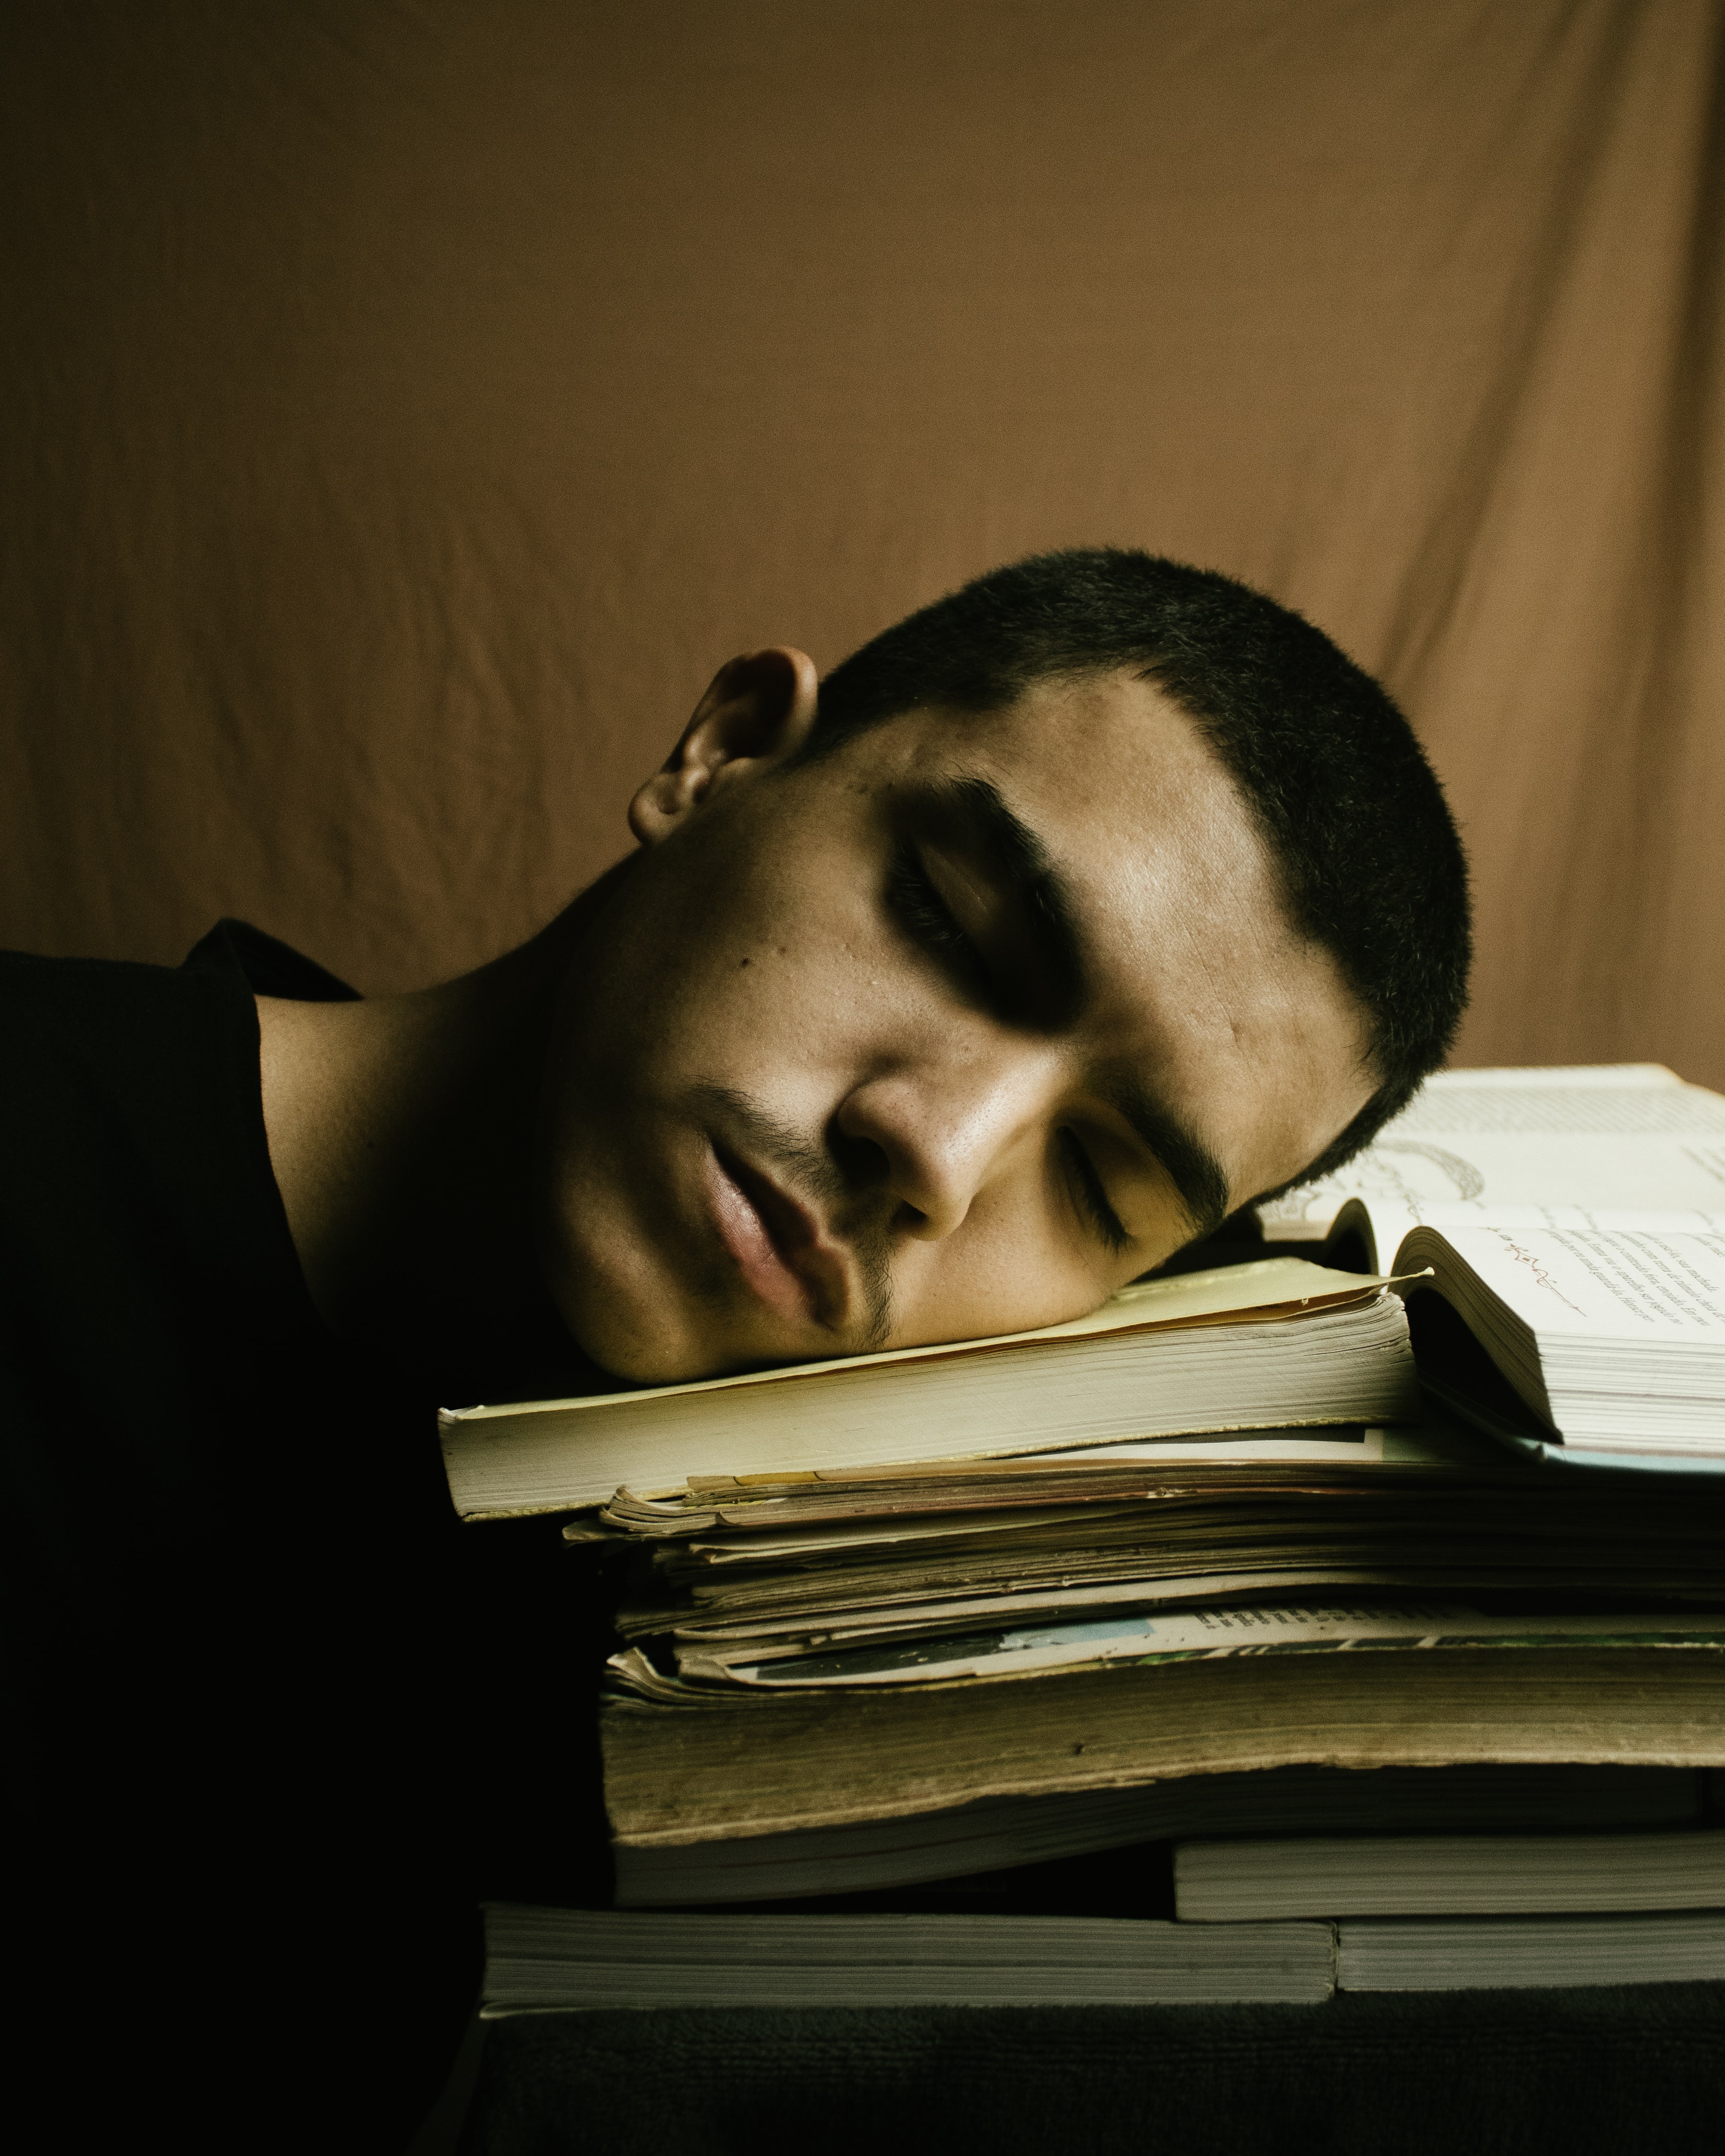 close up of a man in a black shirt, asleep on an open book